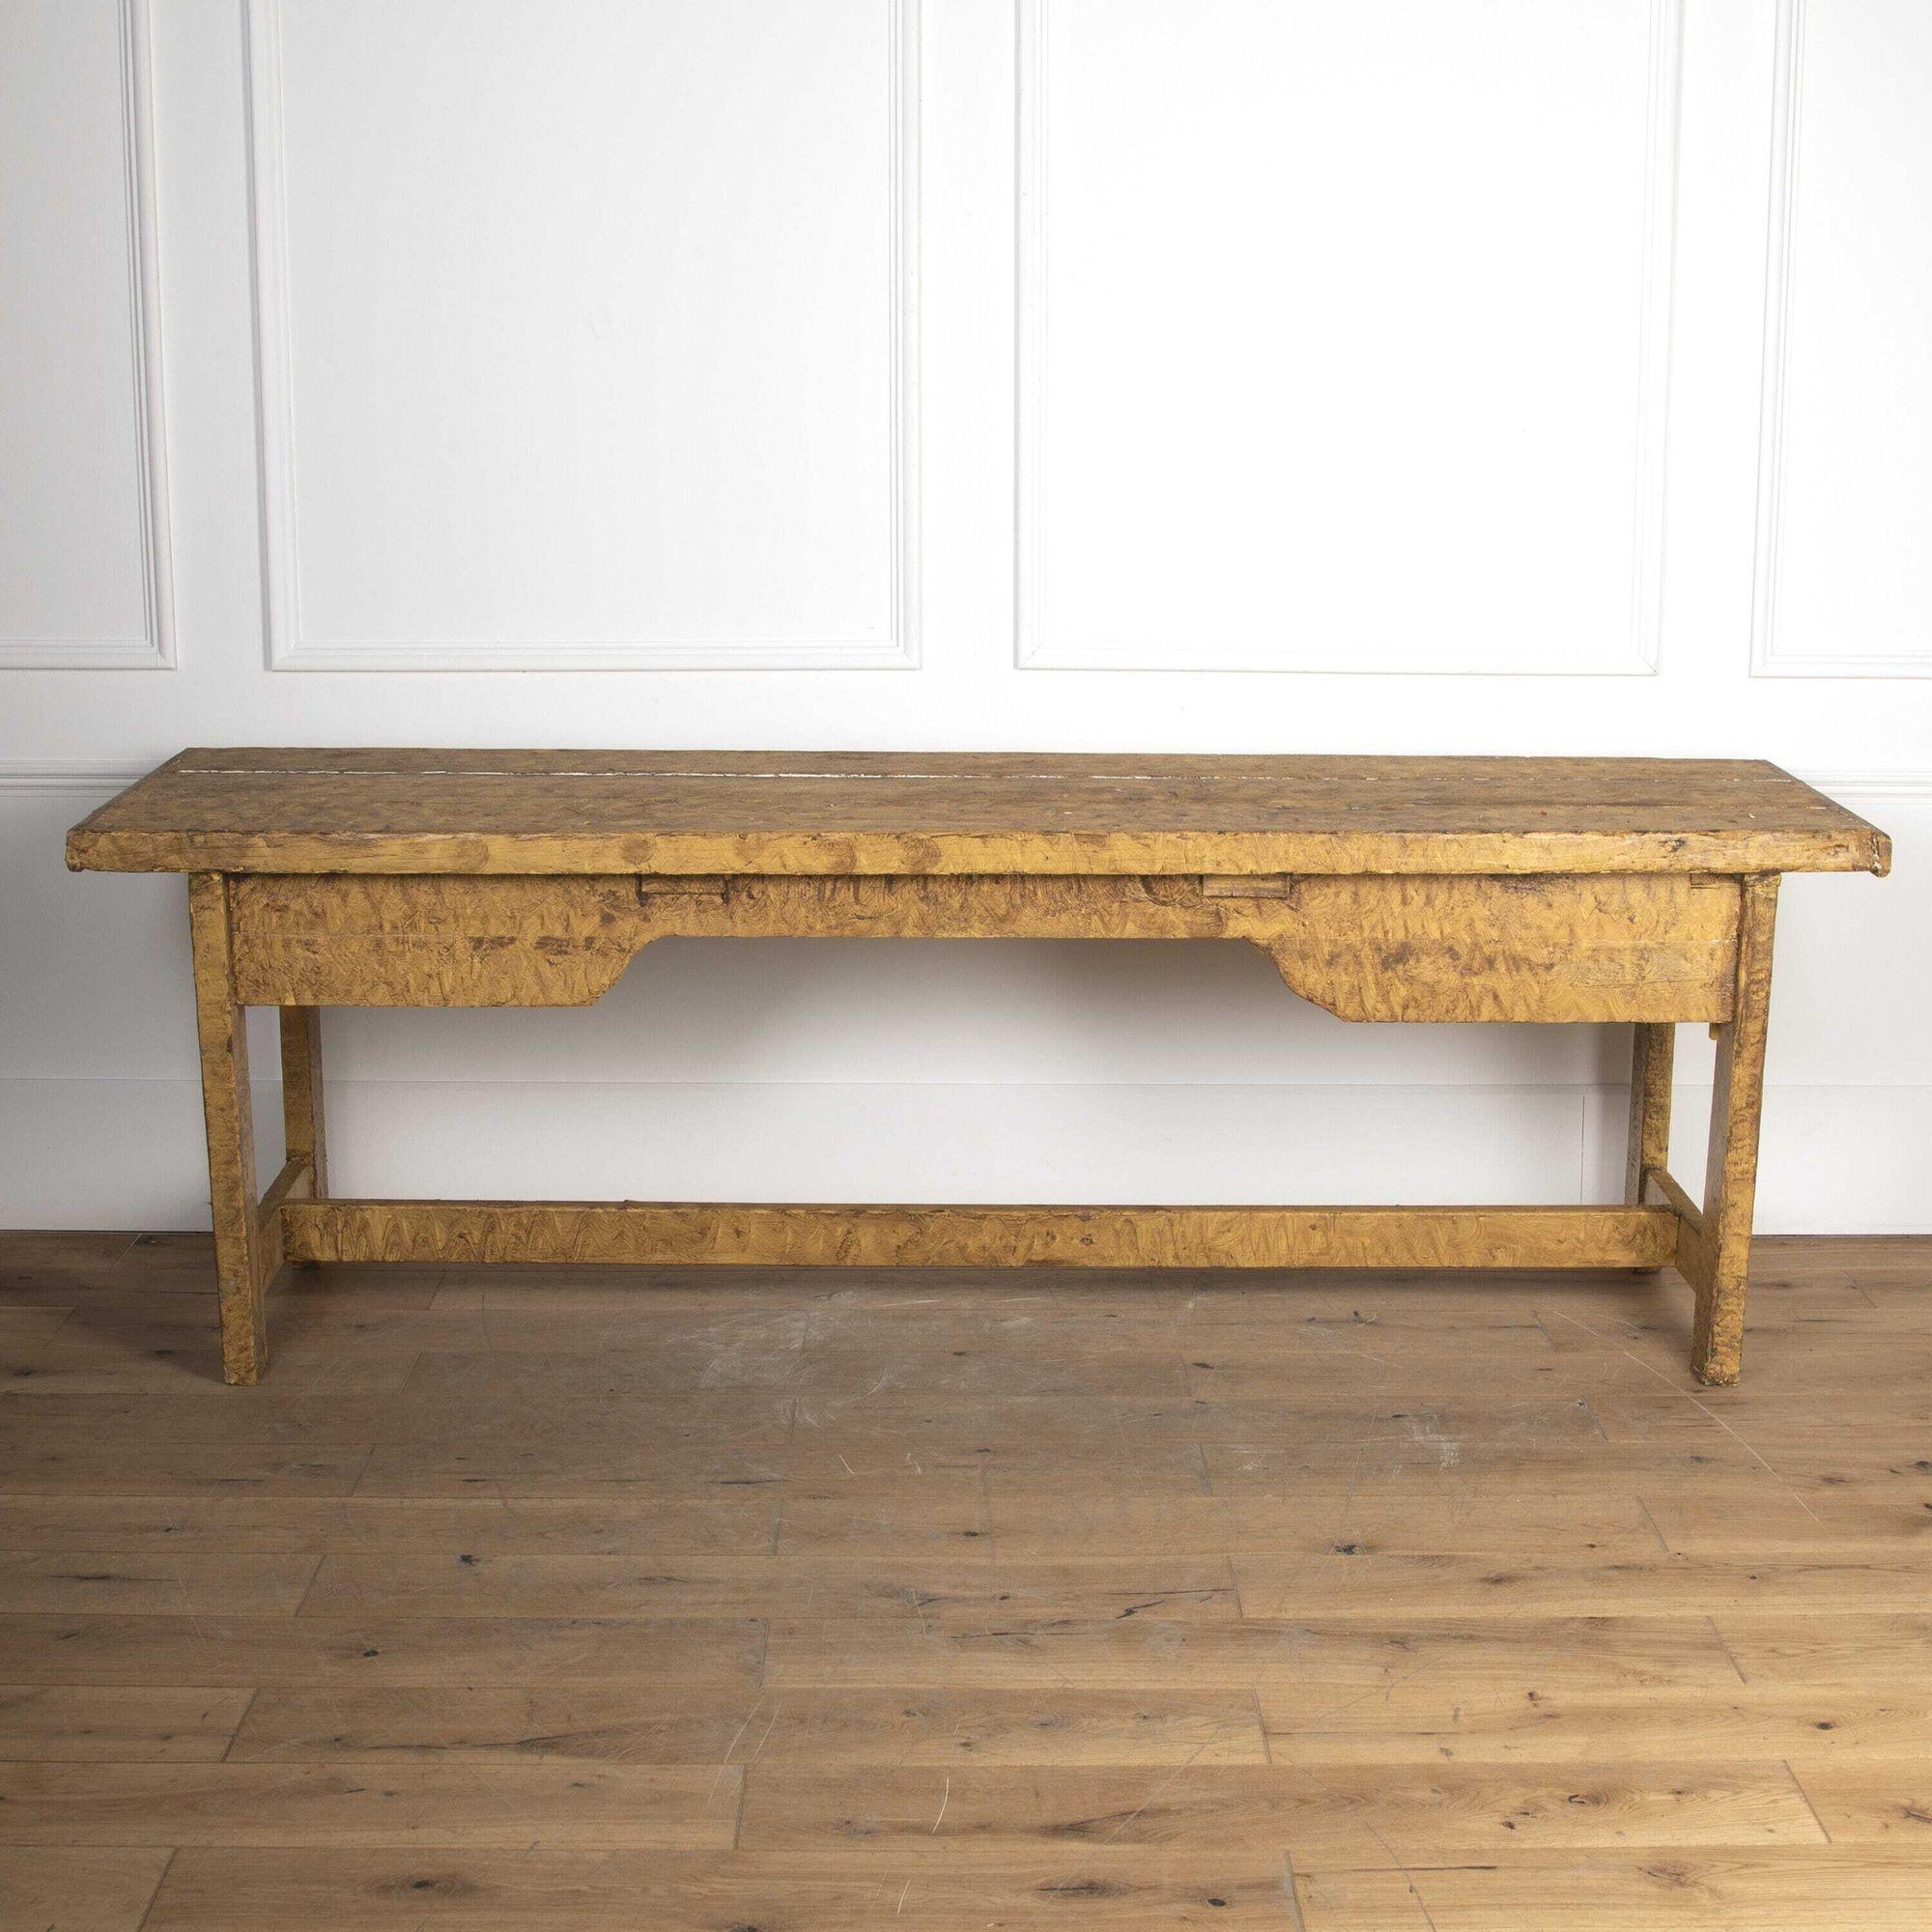 Schöner Tisch aus dem 19. Jahrhundert auf quadratischen Beinen mit originaler Bemalung.
Mit geschnitzten Seitenträgern, die in einem guten Zustand sind und den Tisch als Ganzes wunderbar stützen. 
Dieser Tisch eignet sich sowohl als Konsolentisch